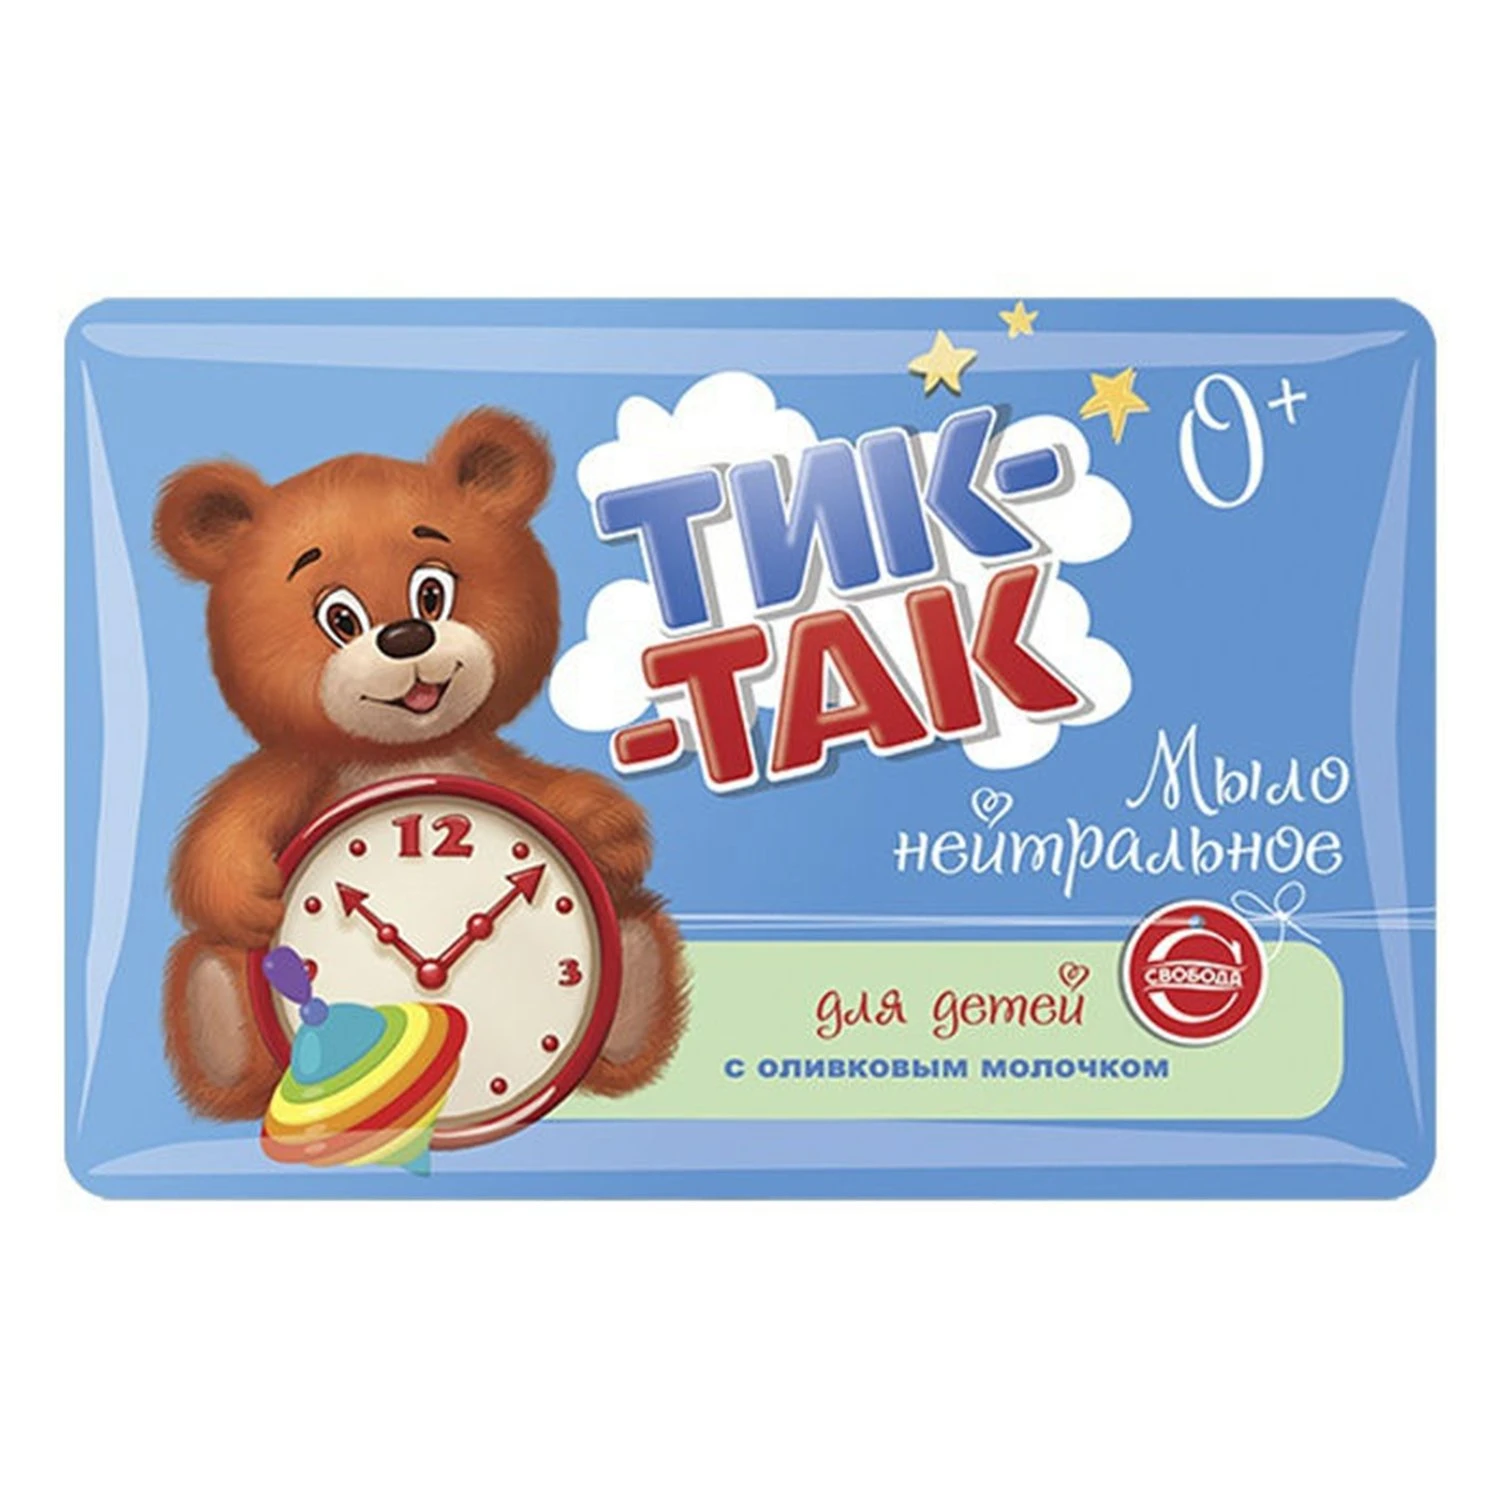 Свобода мыло Детское Тик-Так 90гр. с оливковым молочком (1321456)